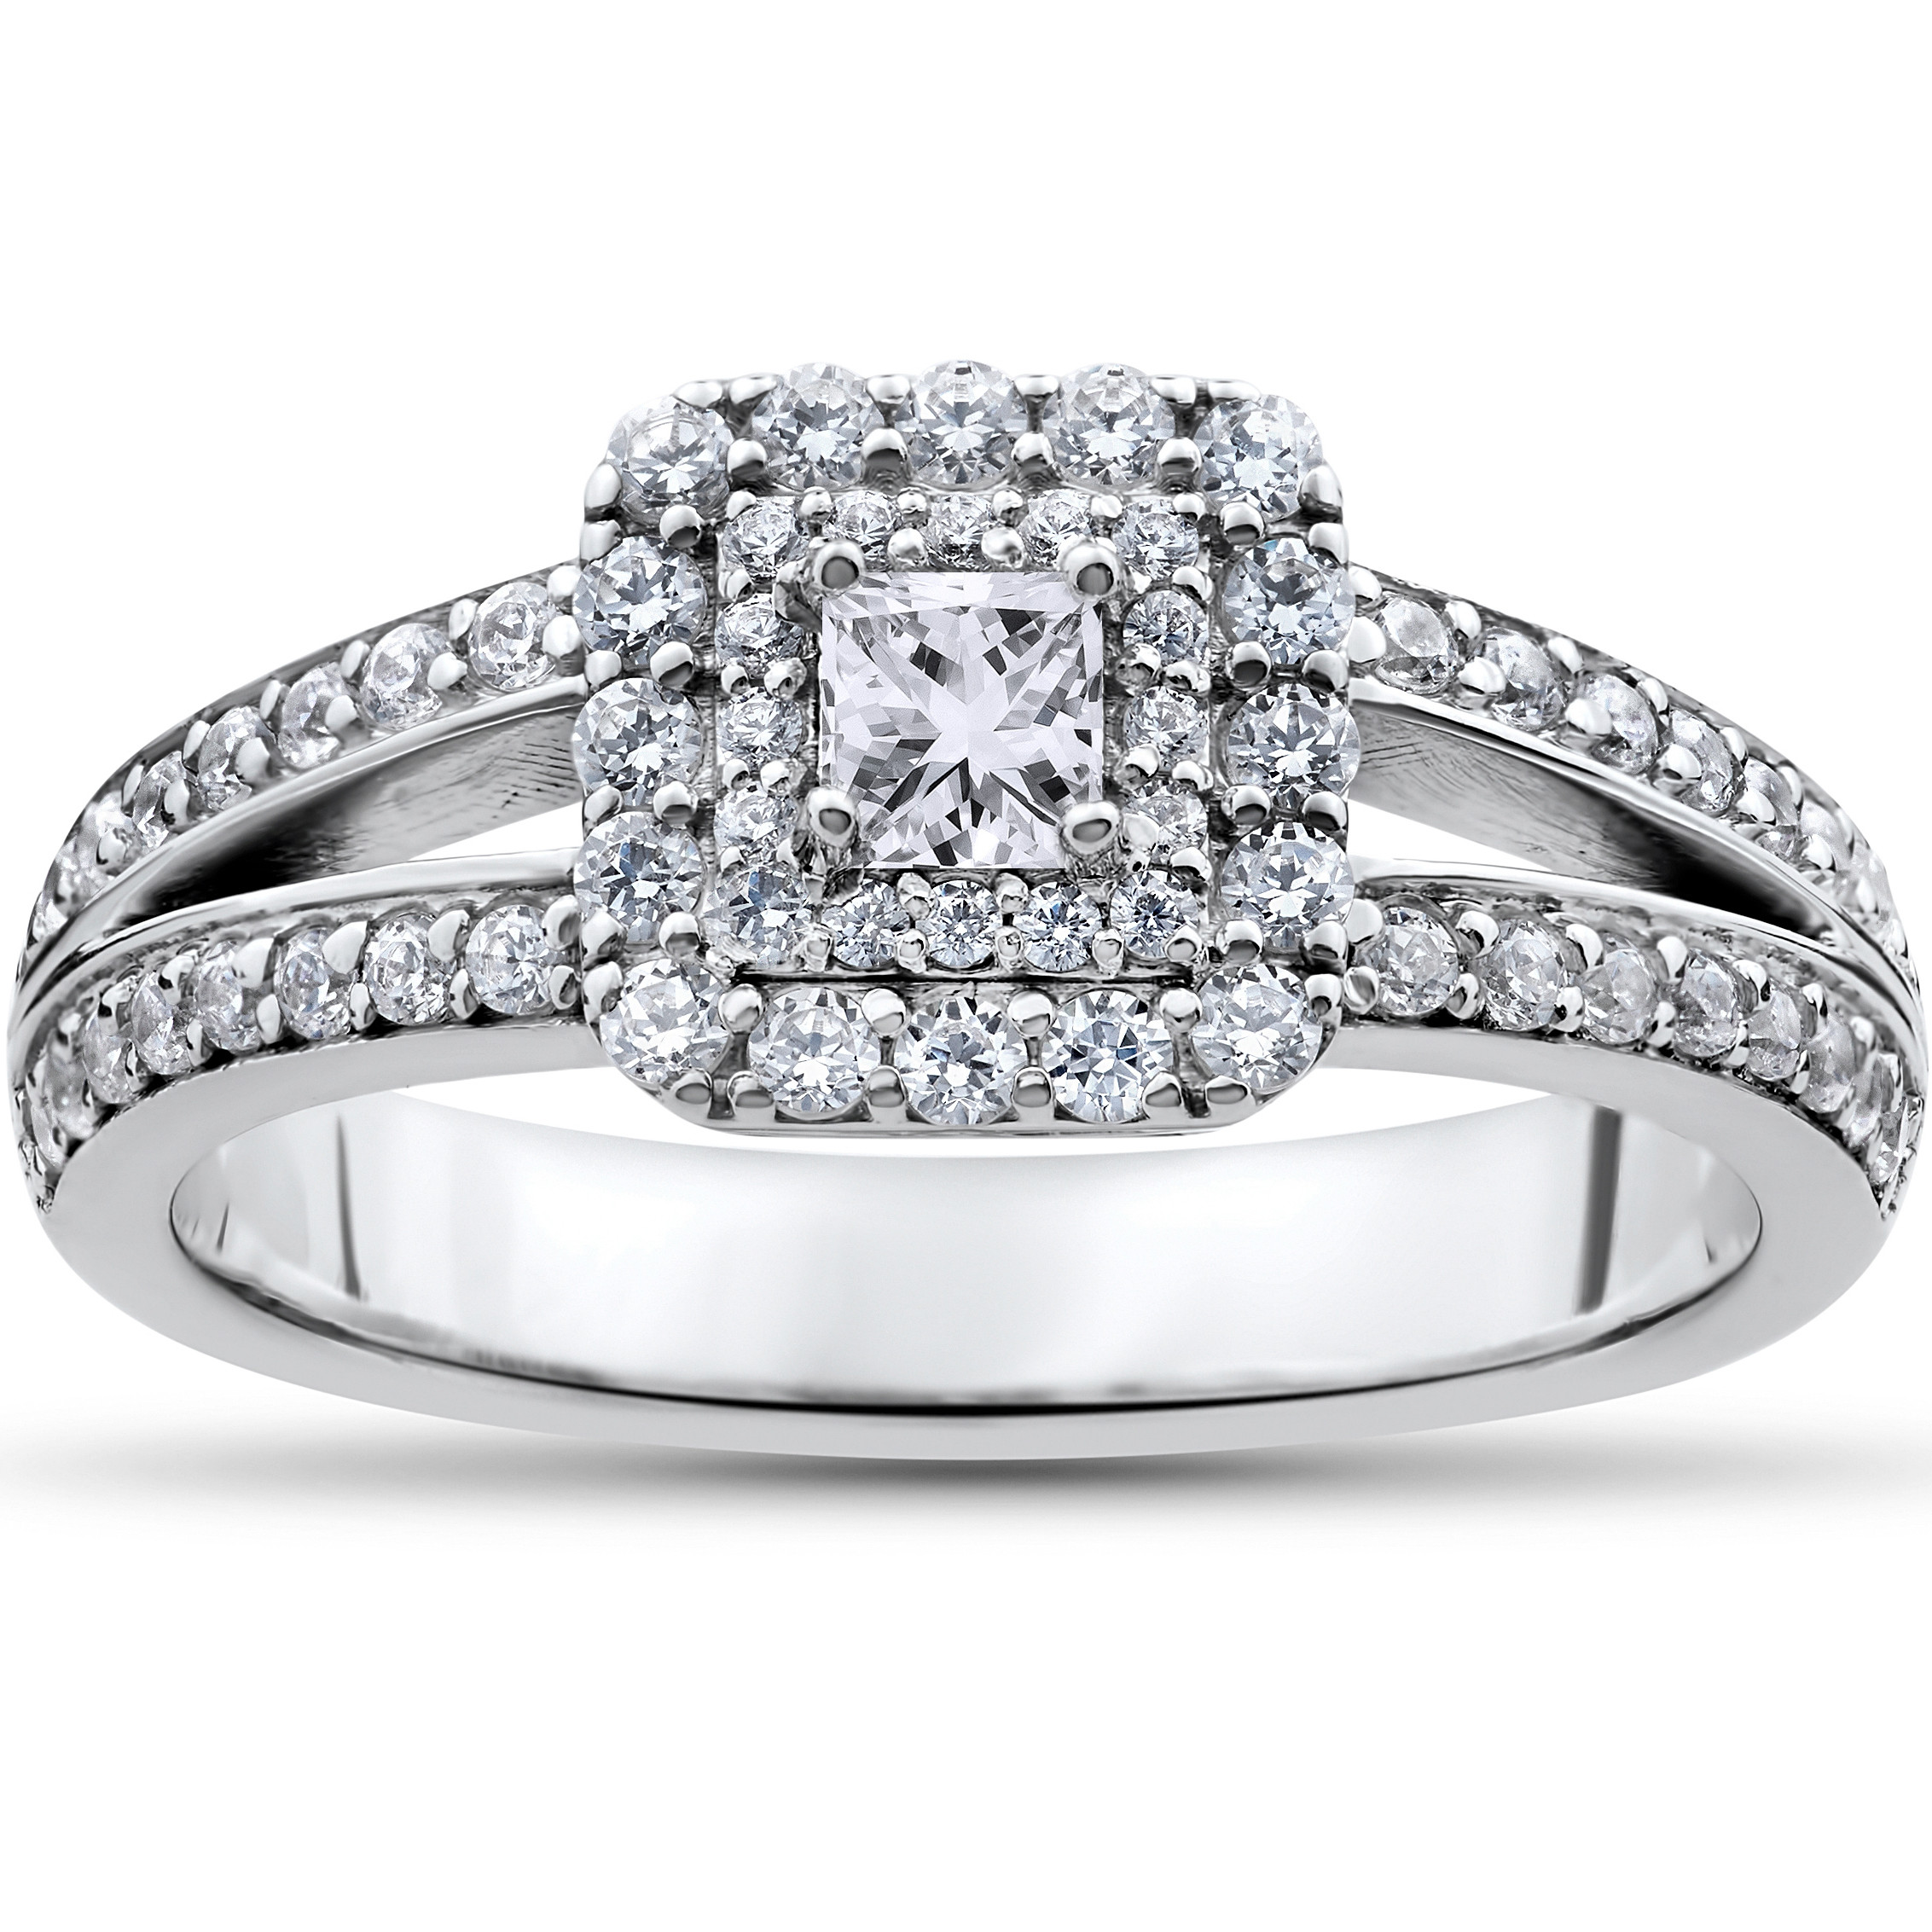 Princess Cut Halo Engagement Rings
 1 ct Princess Cut Diamond Double Halo Engagement Ring 14k